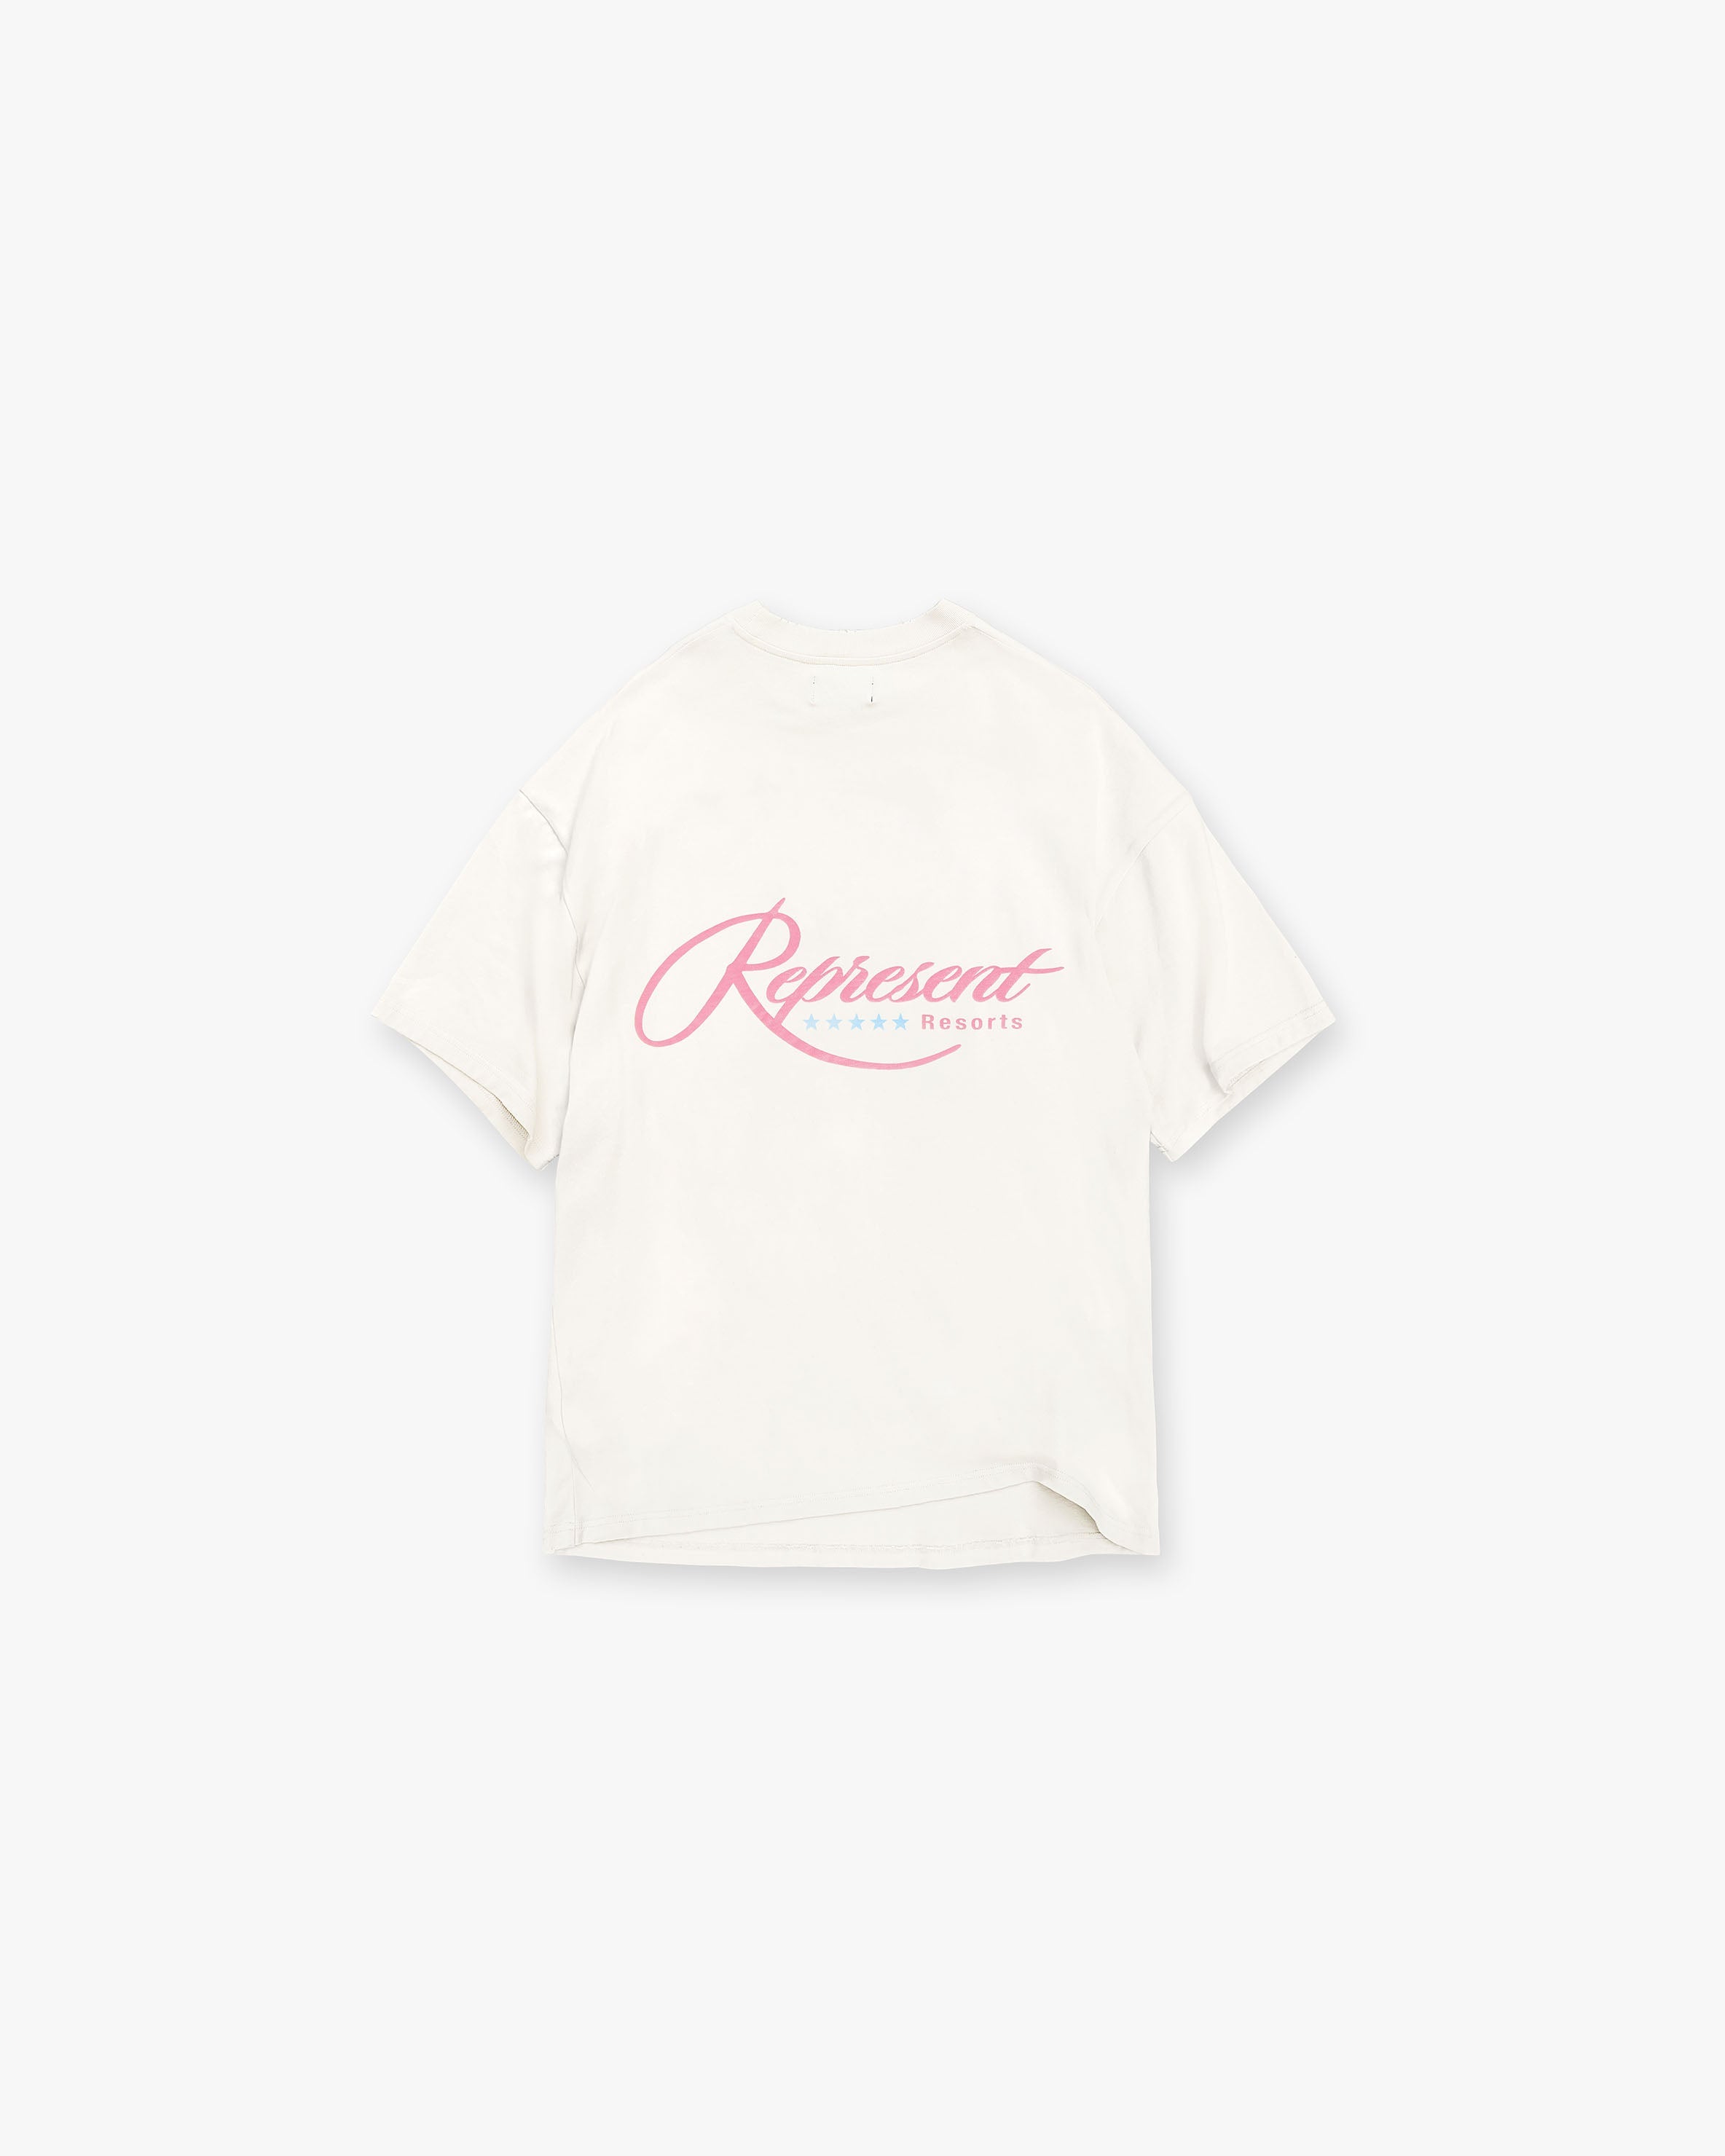 Resort T-Shirt - Flat White